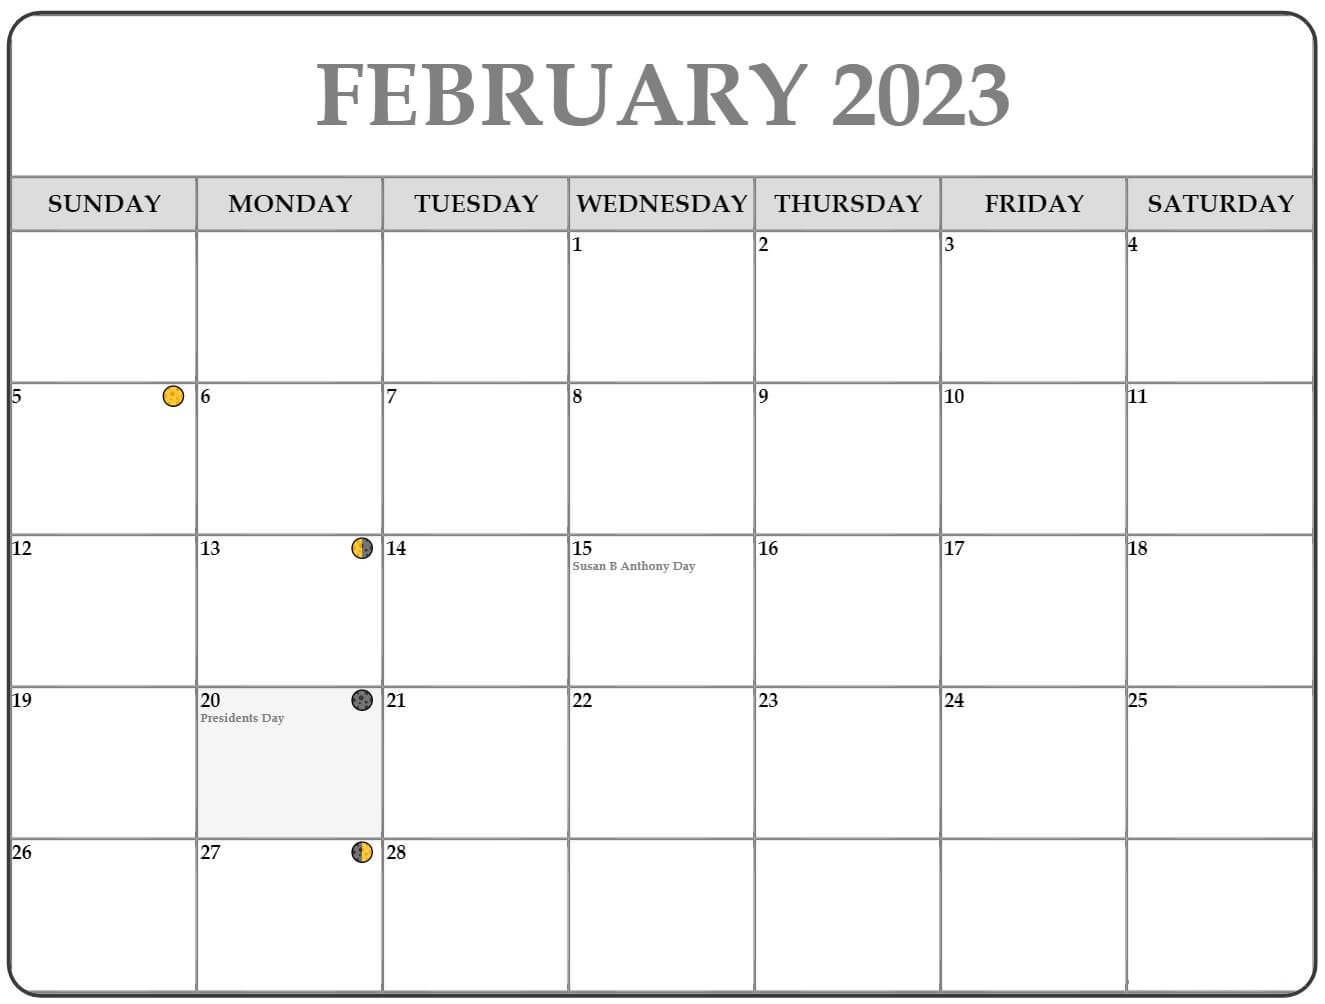 February 2023 Lunar Calendar